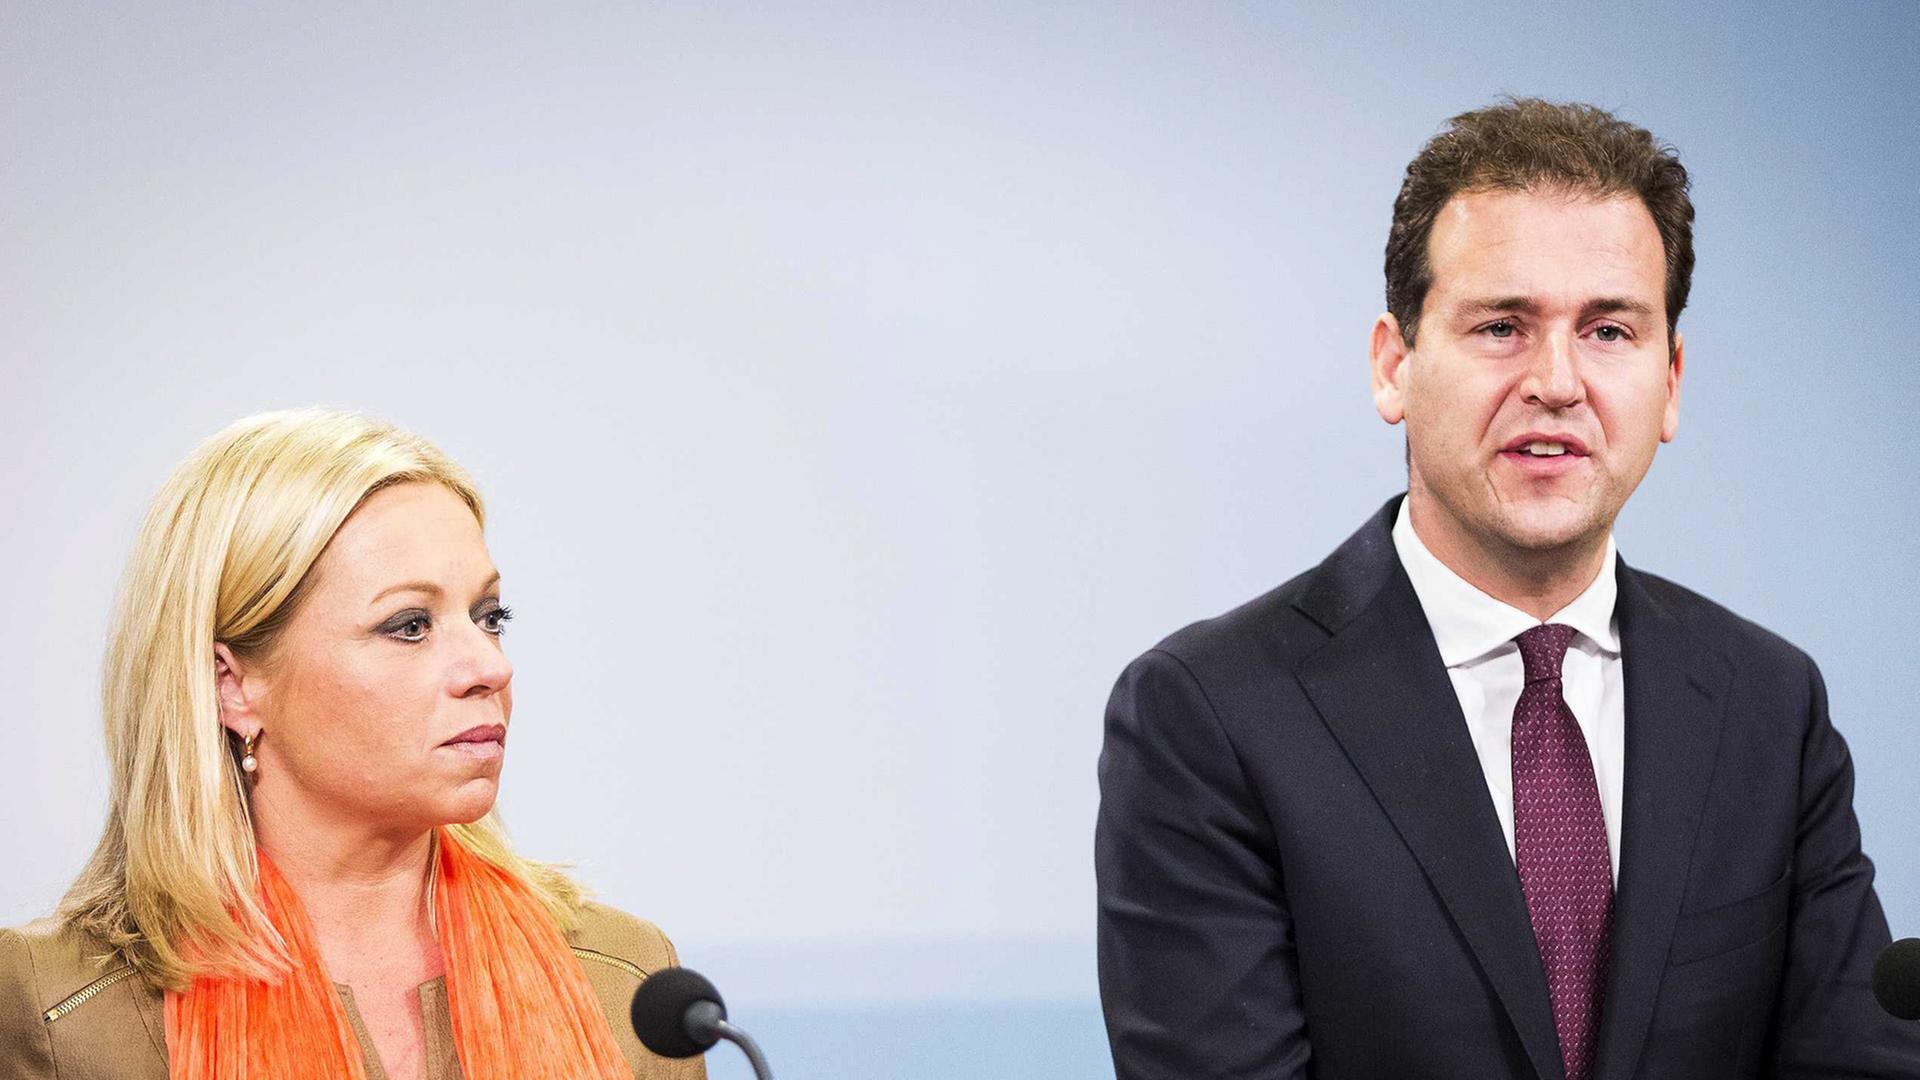 Lodewijk Asscher, Vize-Premierminister der Niederlande und Verteidigungsministerin Jeanine Hennis-Plasschaert verkünden bei einer Pressekonferenz ihr Engagement im Kampf gegen IS